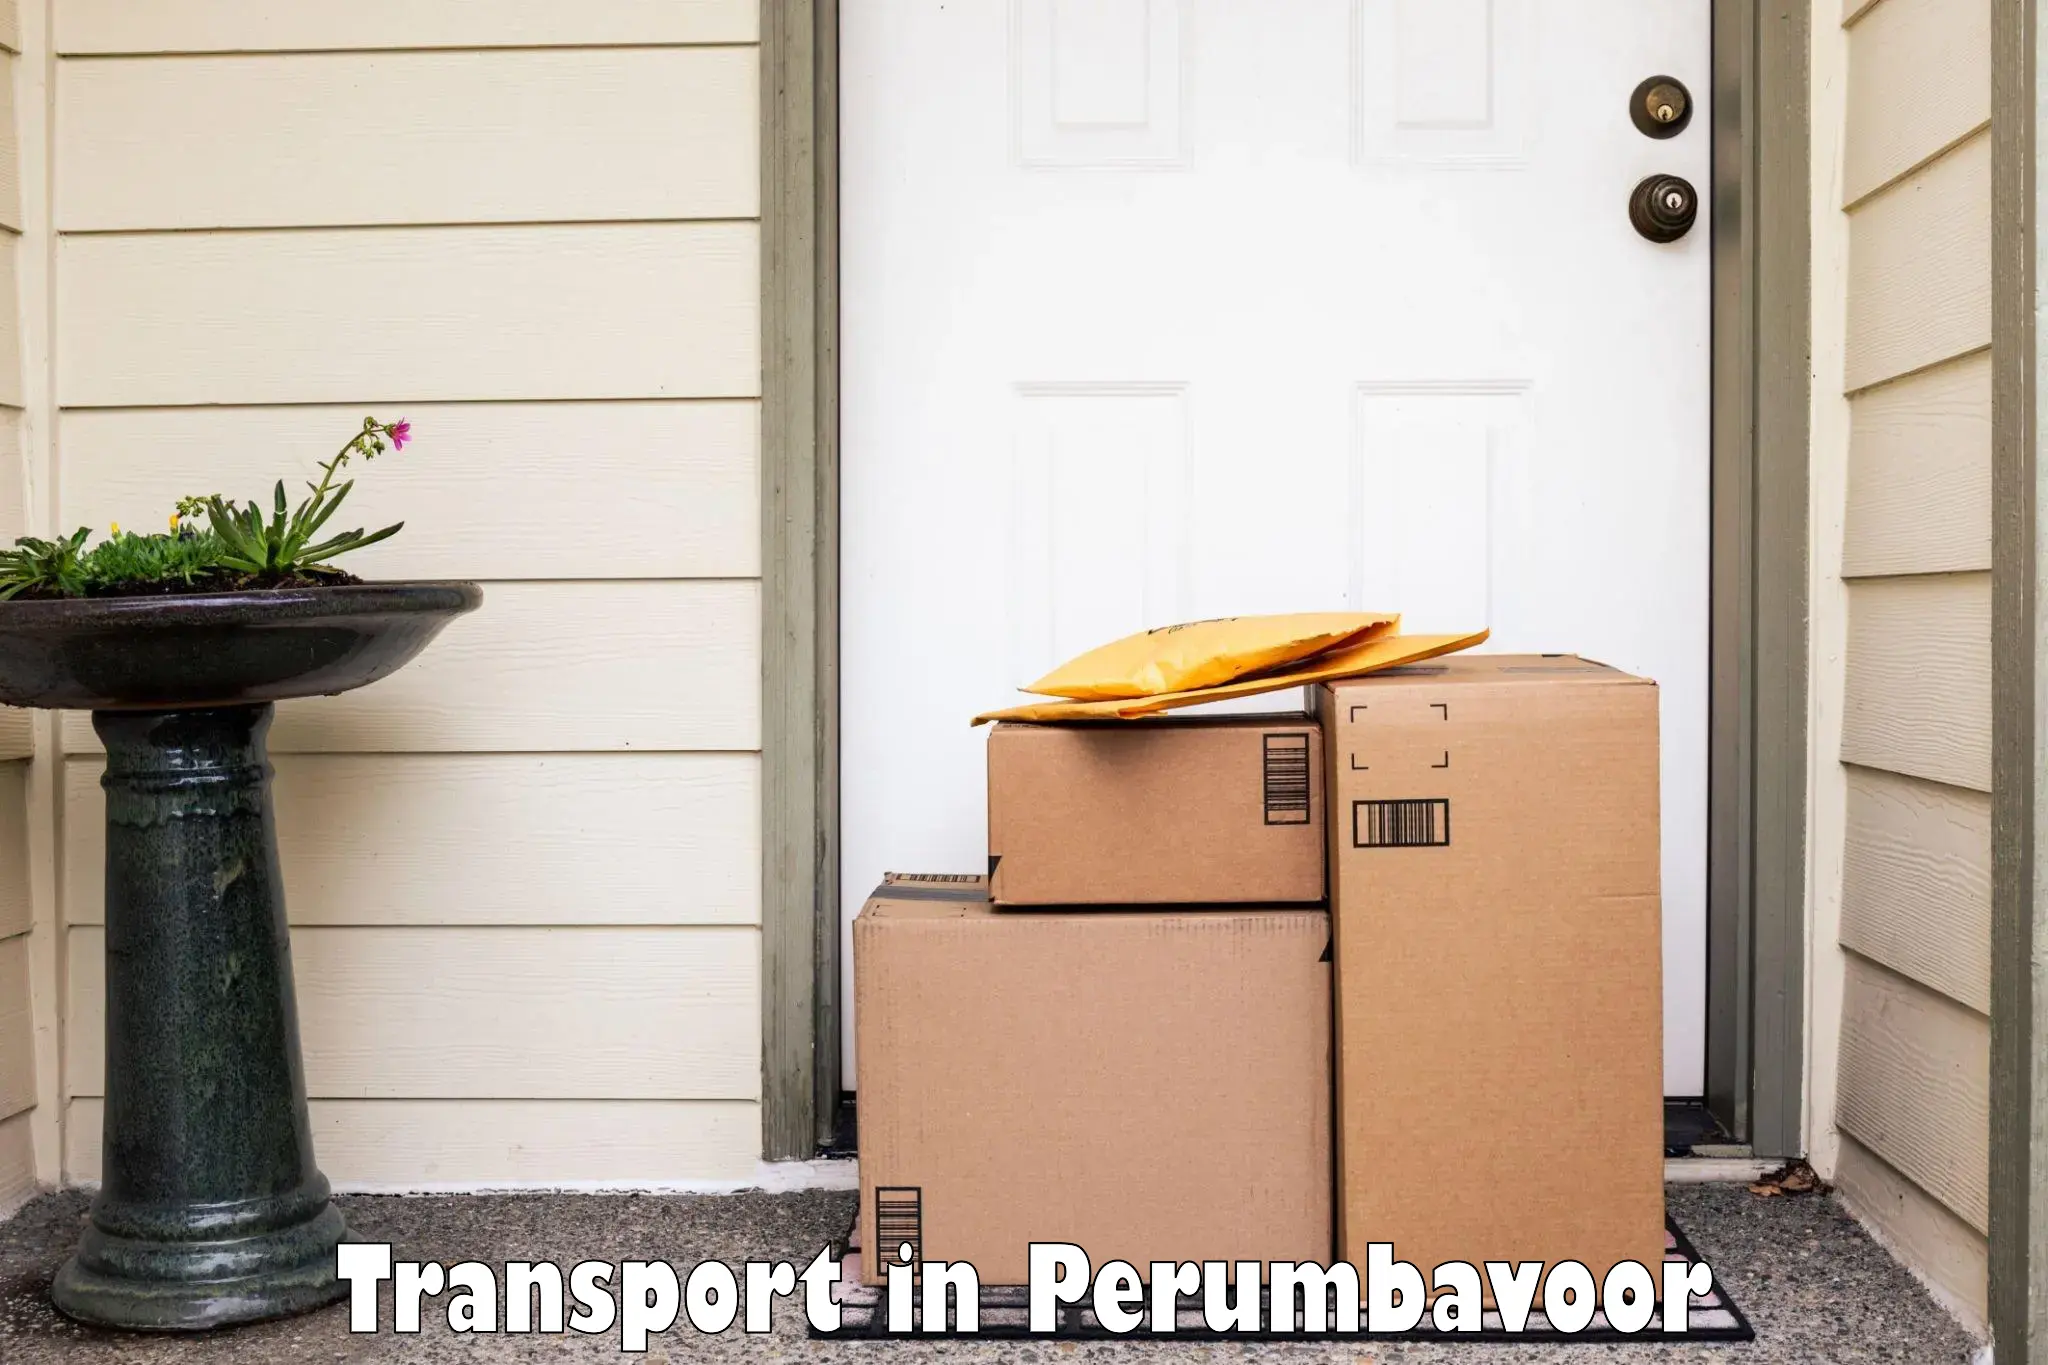 Nearest transport service in Perumbavoor